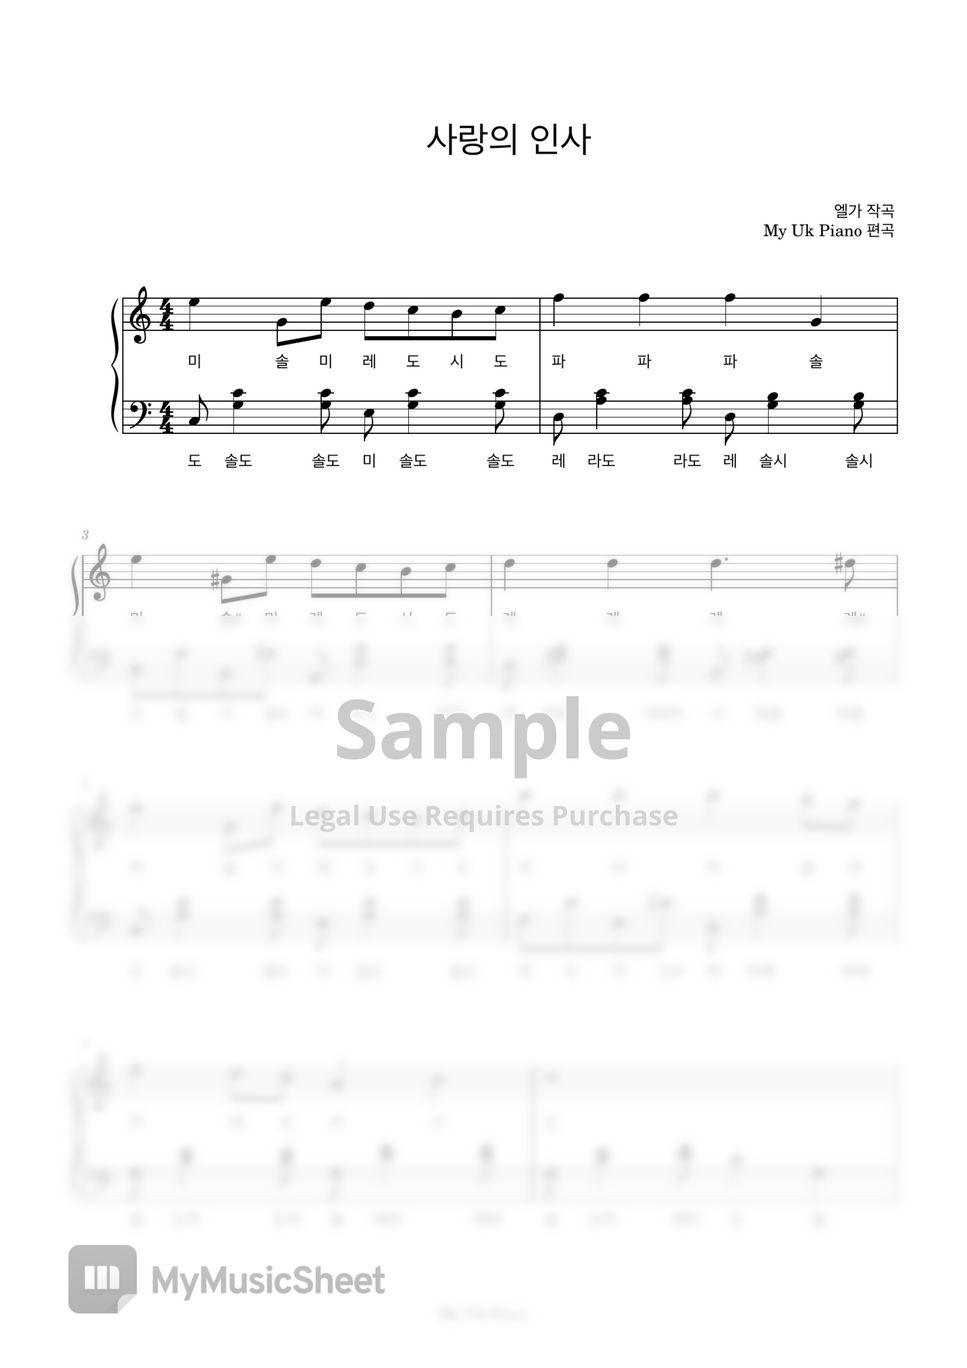 엘가 - 사랑의 인사 (쉬운계이름악보) by My Uk Piano